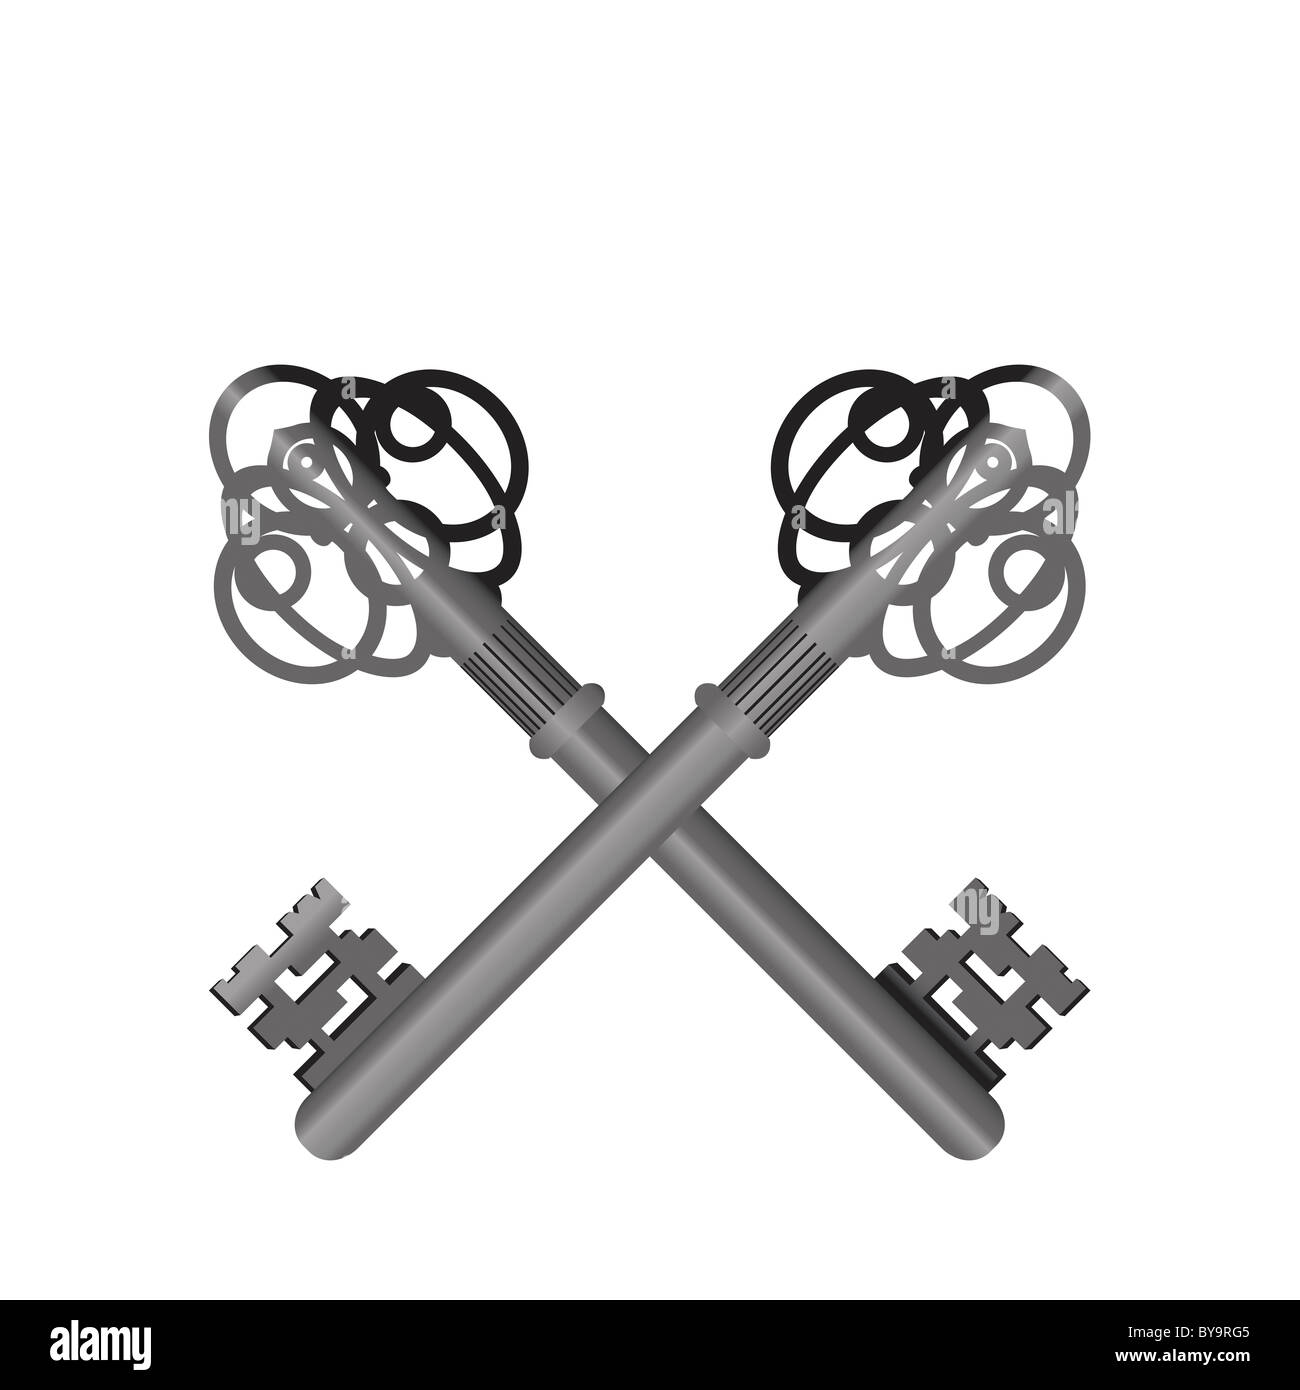 Les clefs croisées - symbole de la Papauté Banque D'Images